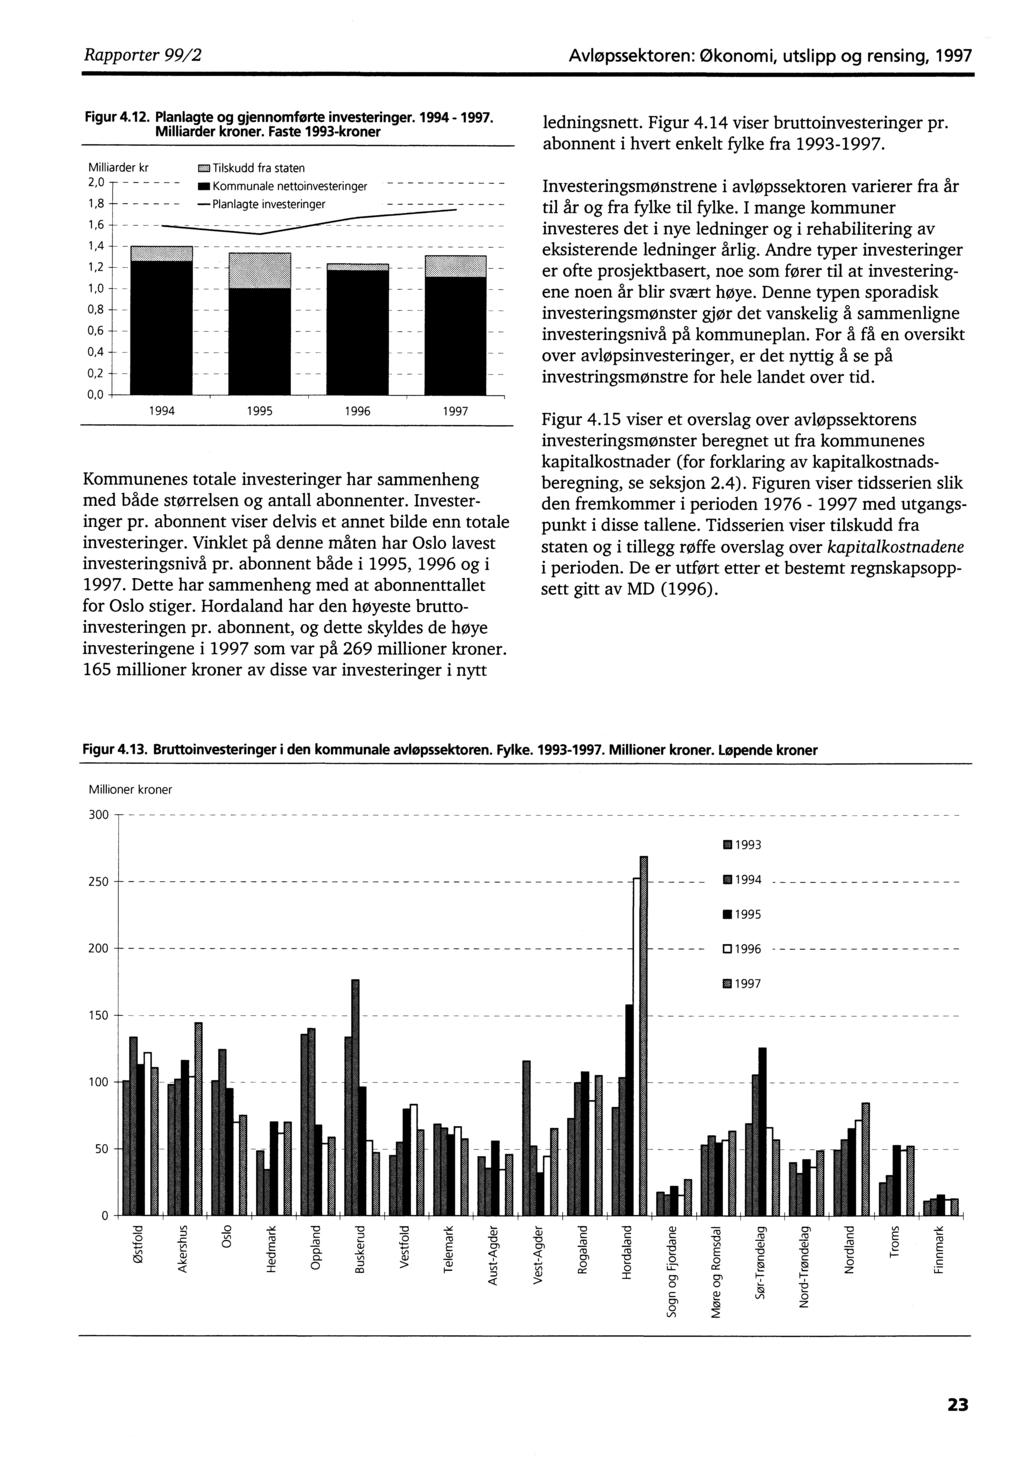 Rapporter 99/2 Avløpssektoren: Økonomi, utslipp og rensing, 1997 Figur 4.12. Planlagte og gjennomførte investeringer. 1994-1997. Milliarder kroner.